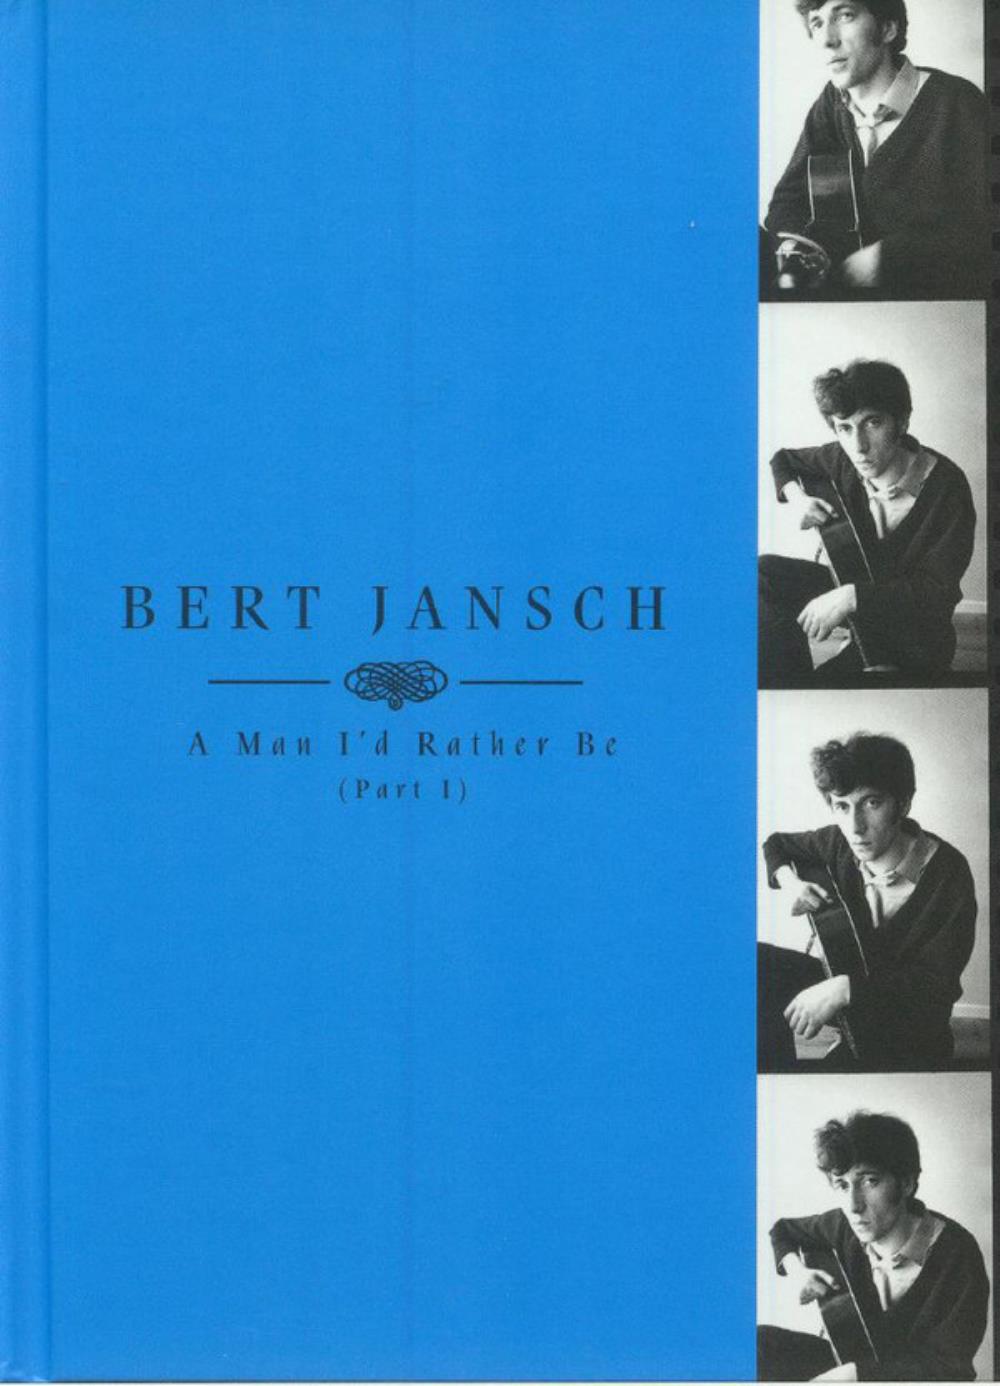 Bert Jansch A Man I'd Rather Be (Part 1) album cover